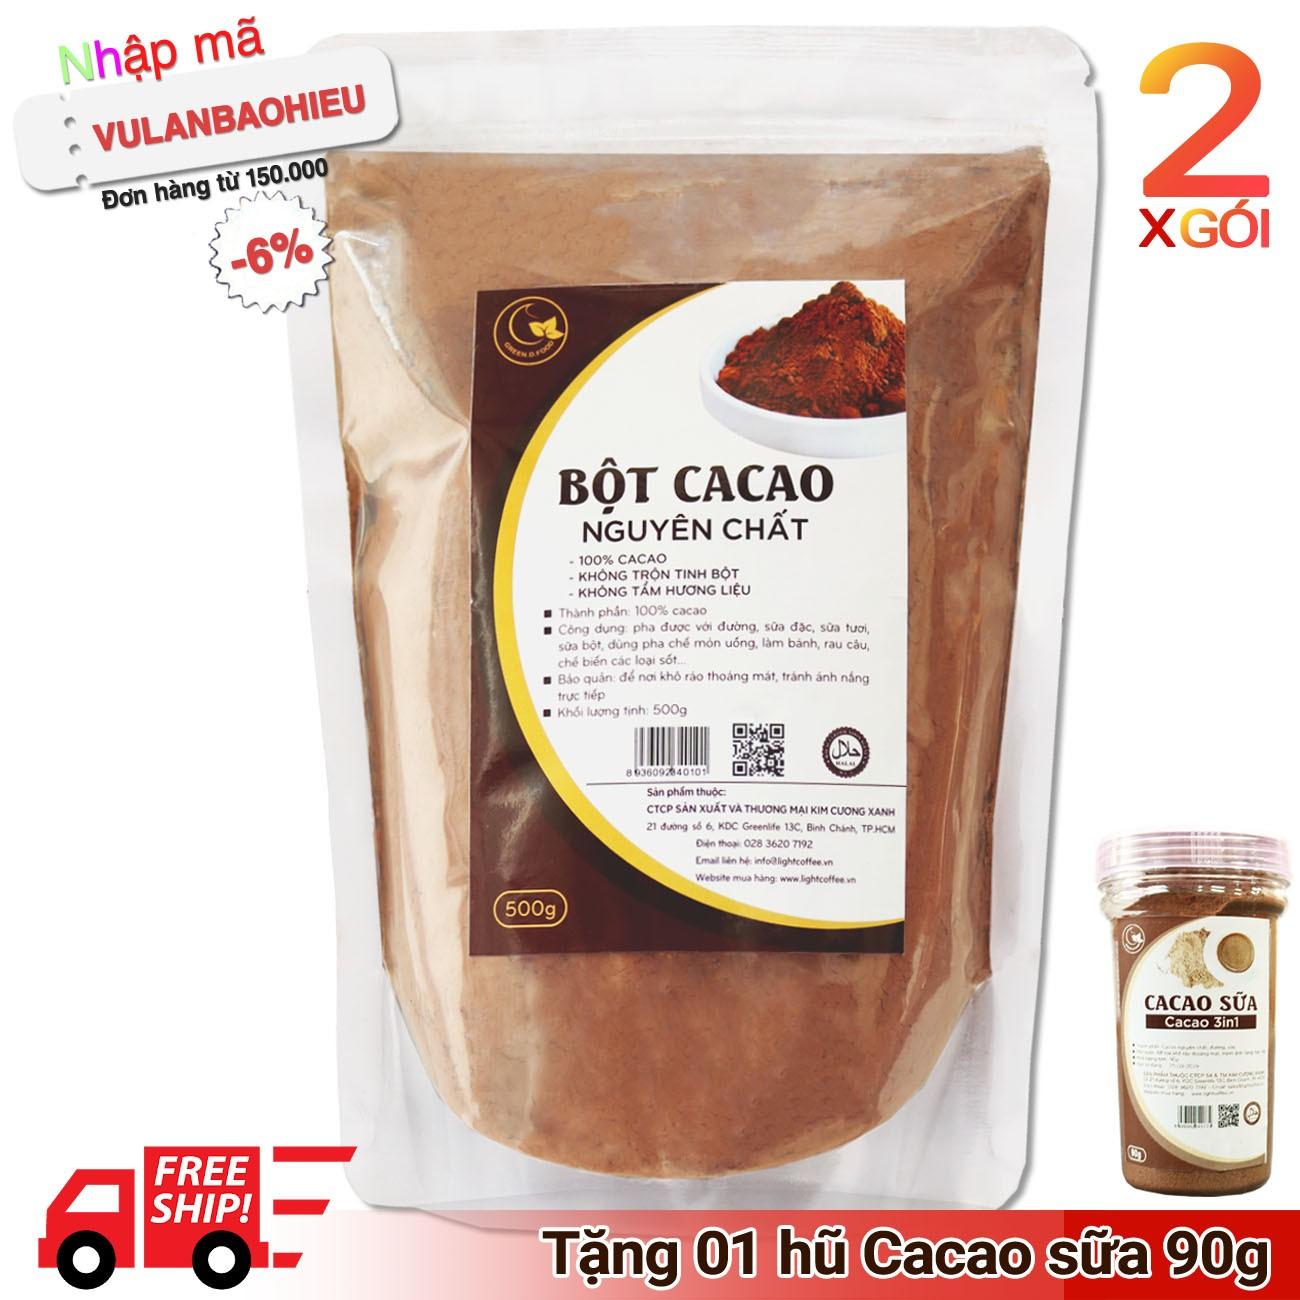 02 gói (1kg) bột ca cao nguyên chất 100% - Light Cacao